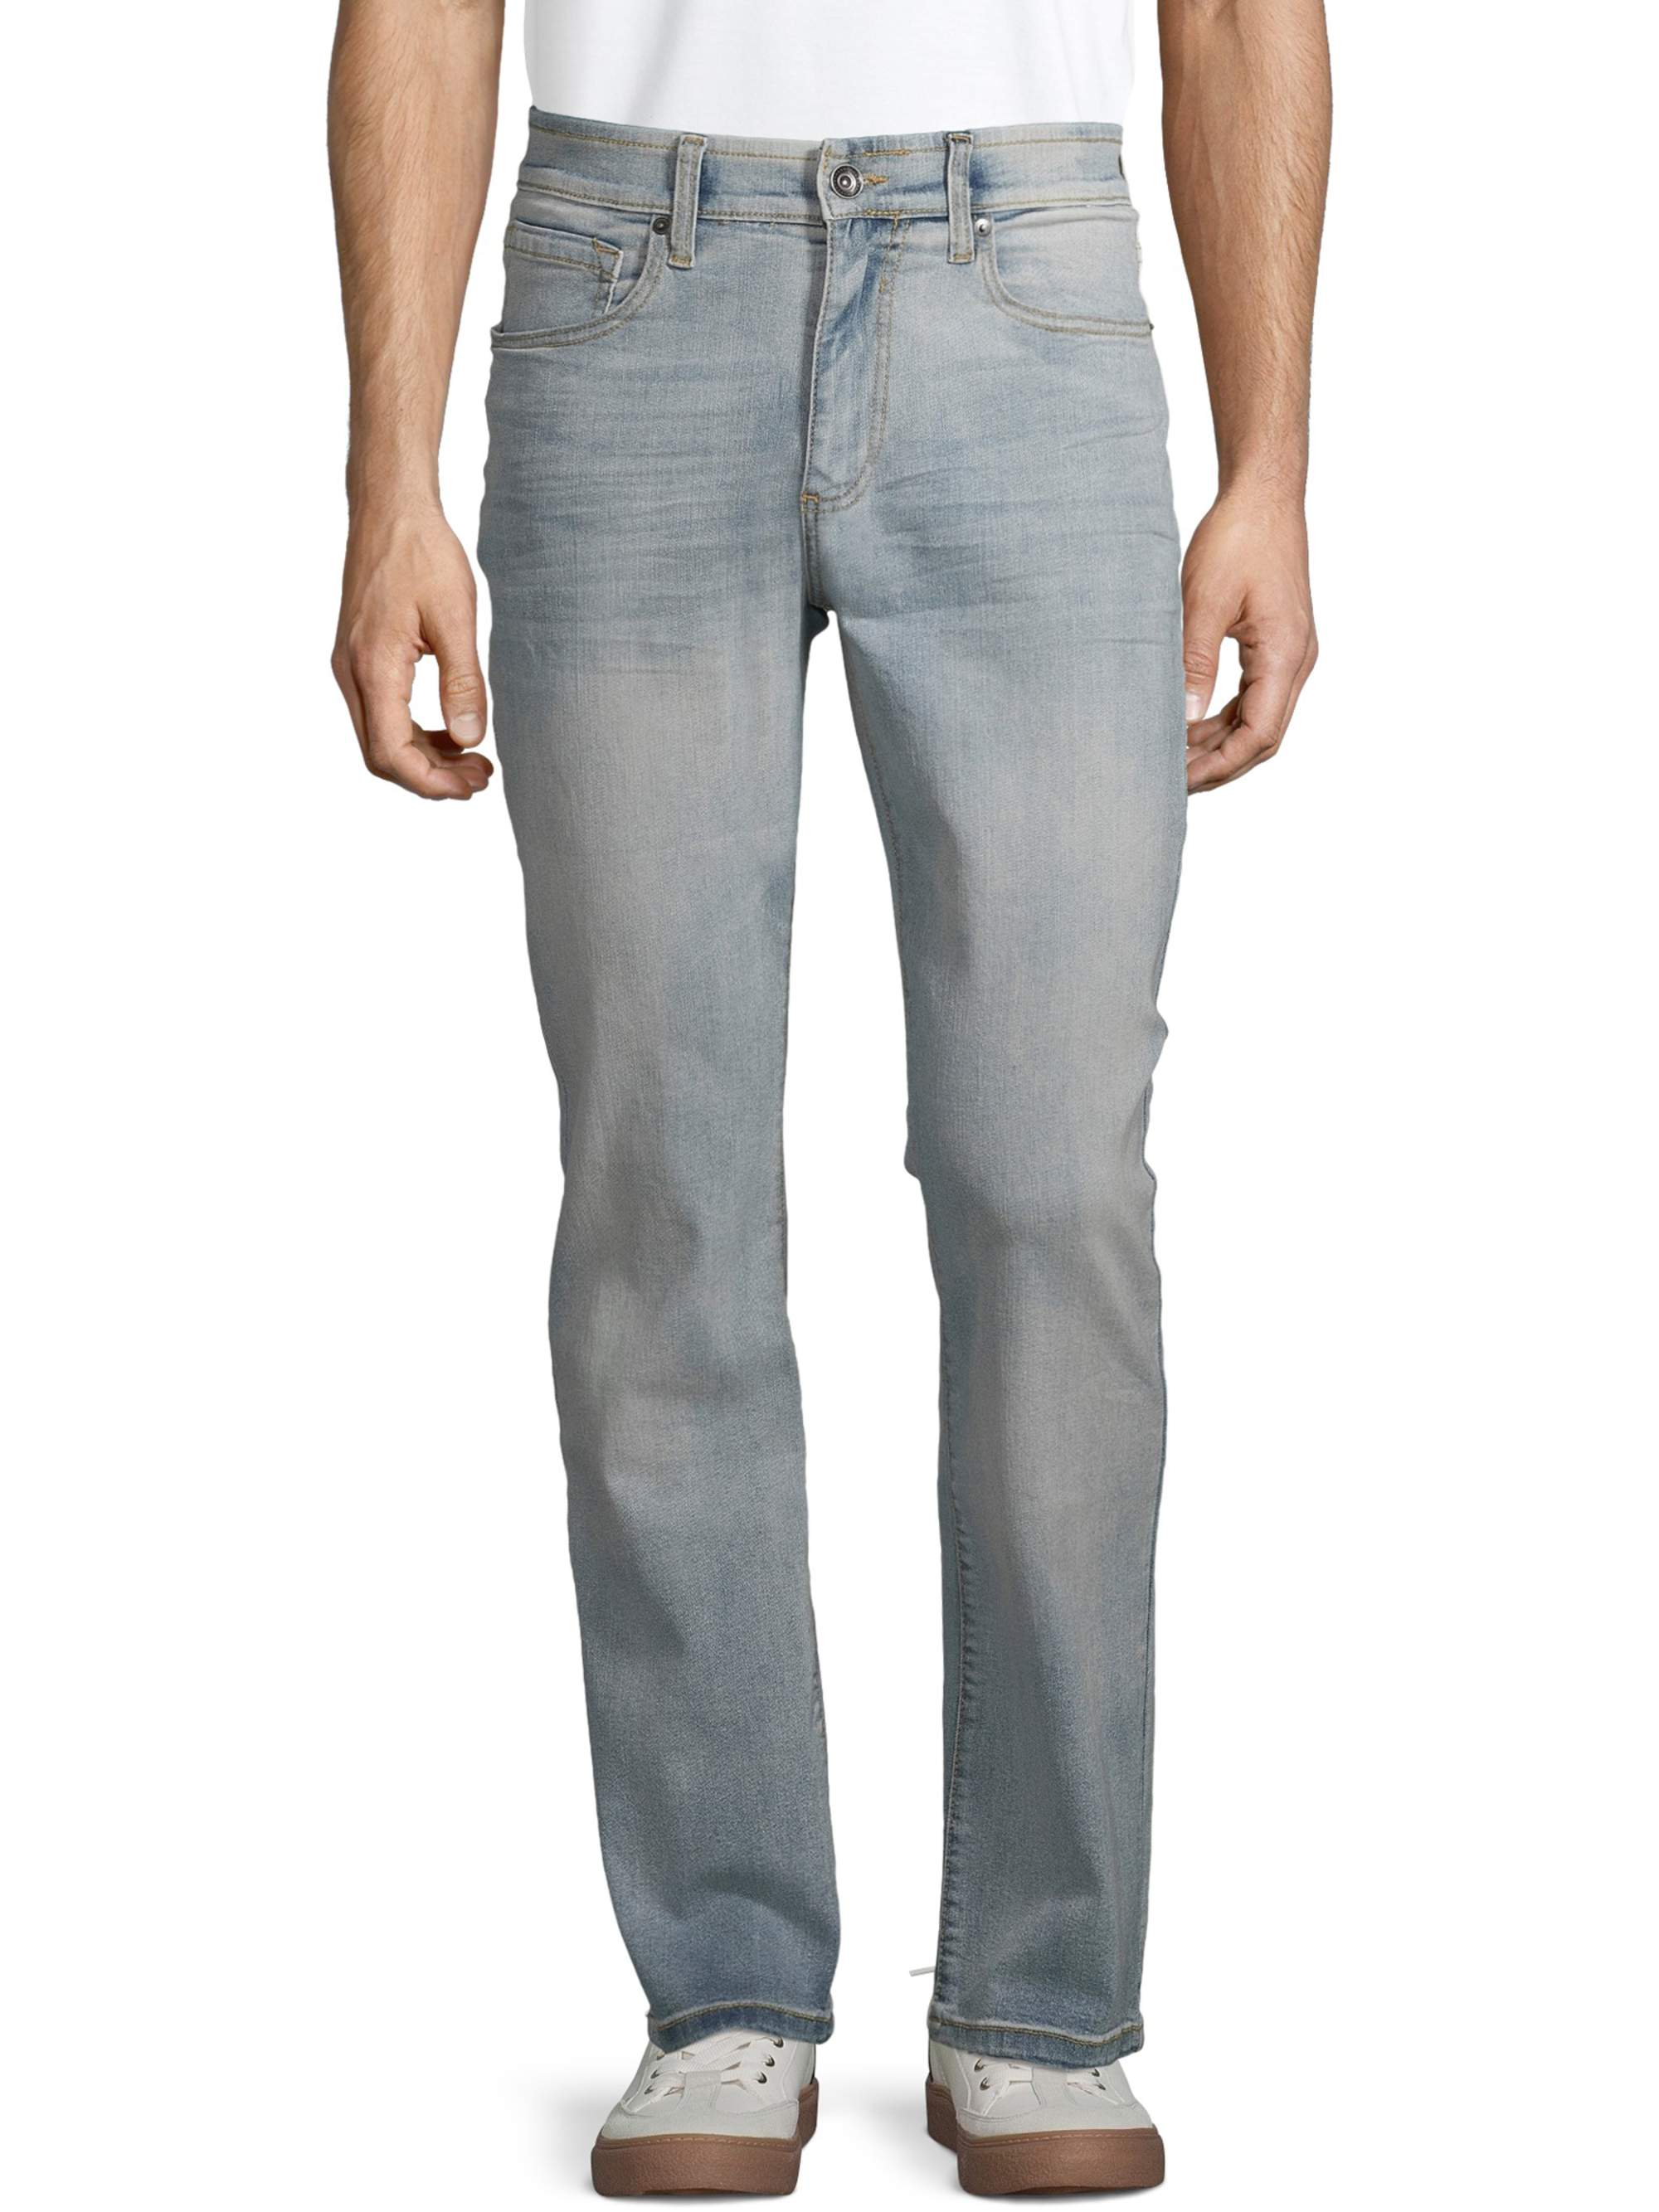 Lazer Men's Flex Denim Bootcut Jeans, Waist Sizes 29"-38", Bootcut Mens Jeans - image 1 of 3